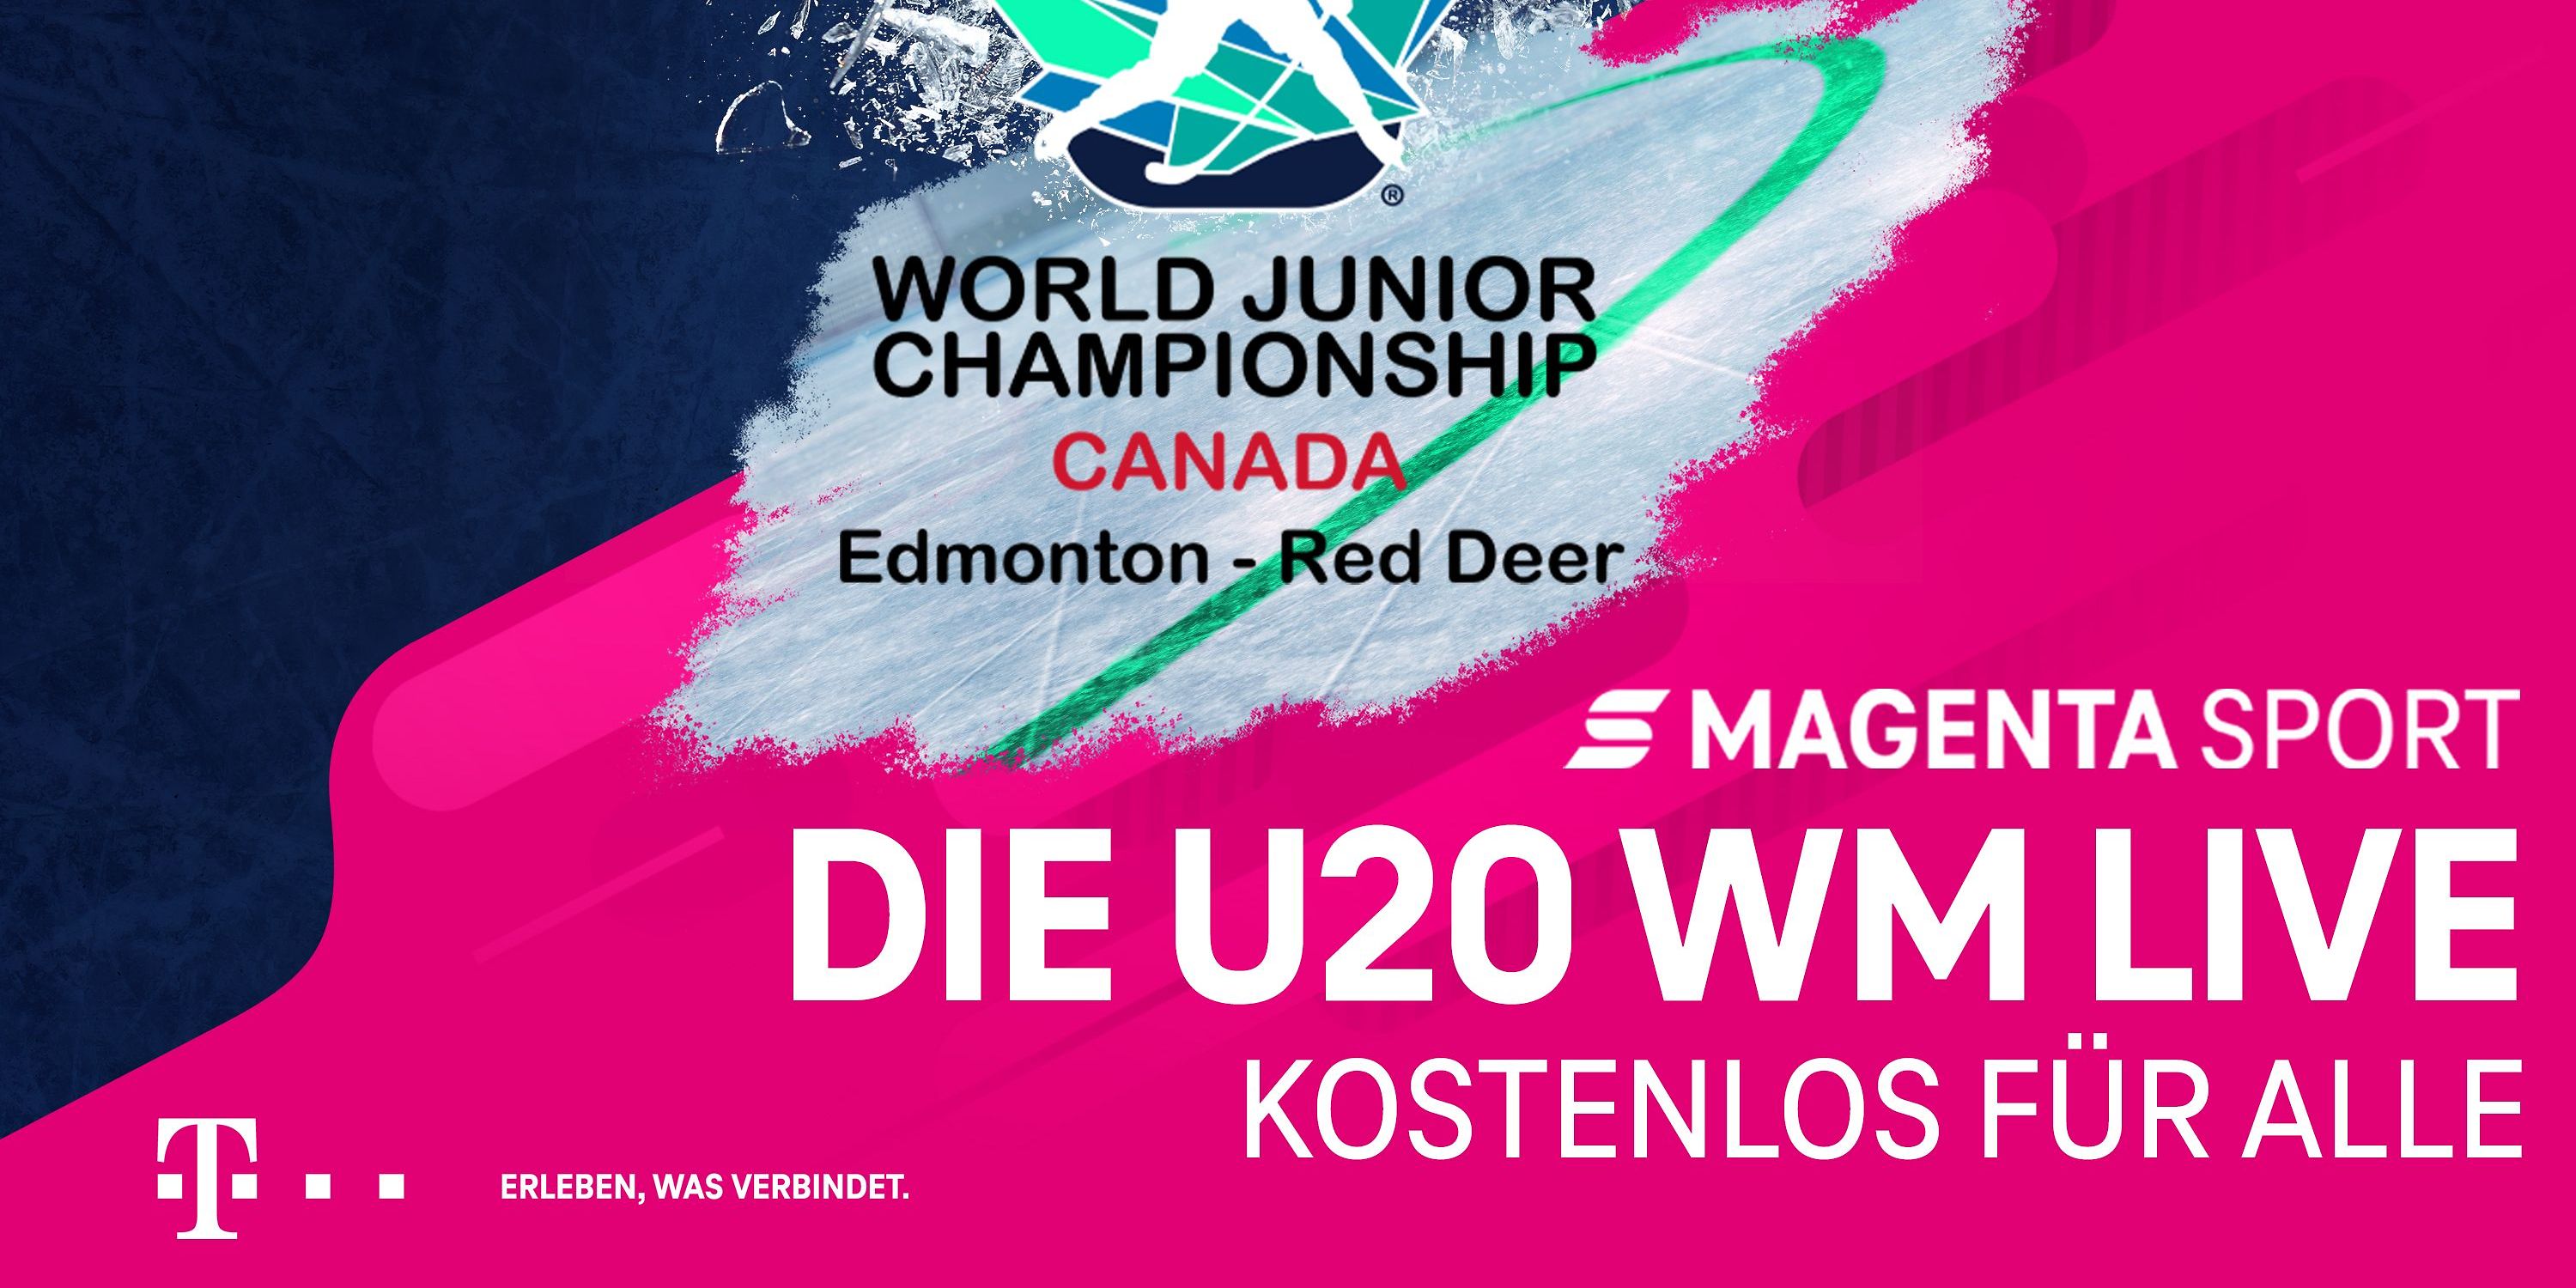 MagentaSport zeigt U20-Eishockey-WM live und frei empfangbar Deutsche Telekom